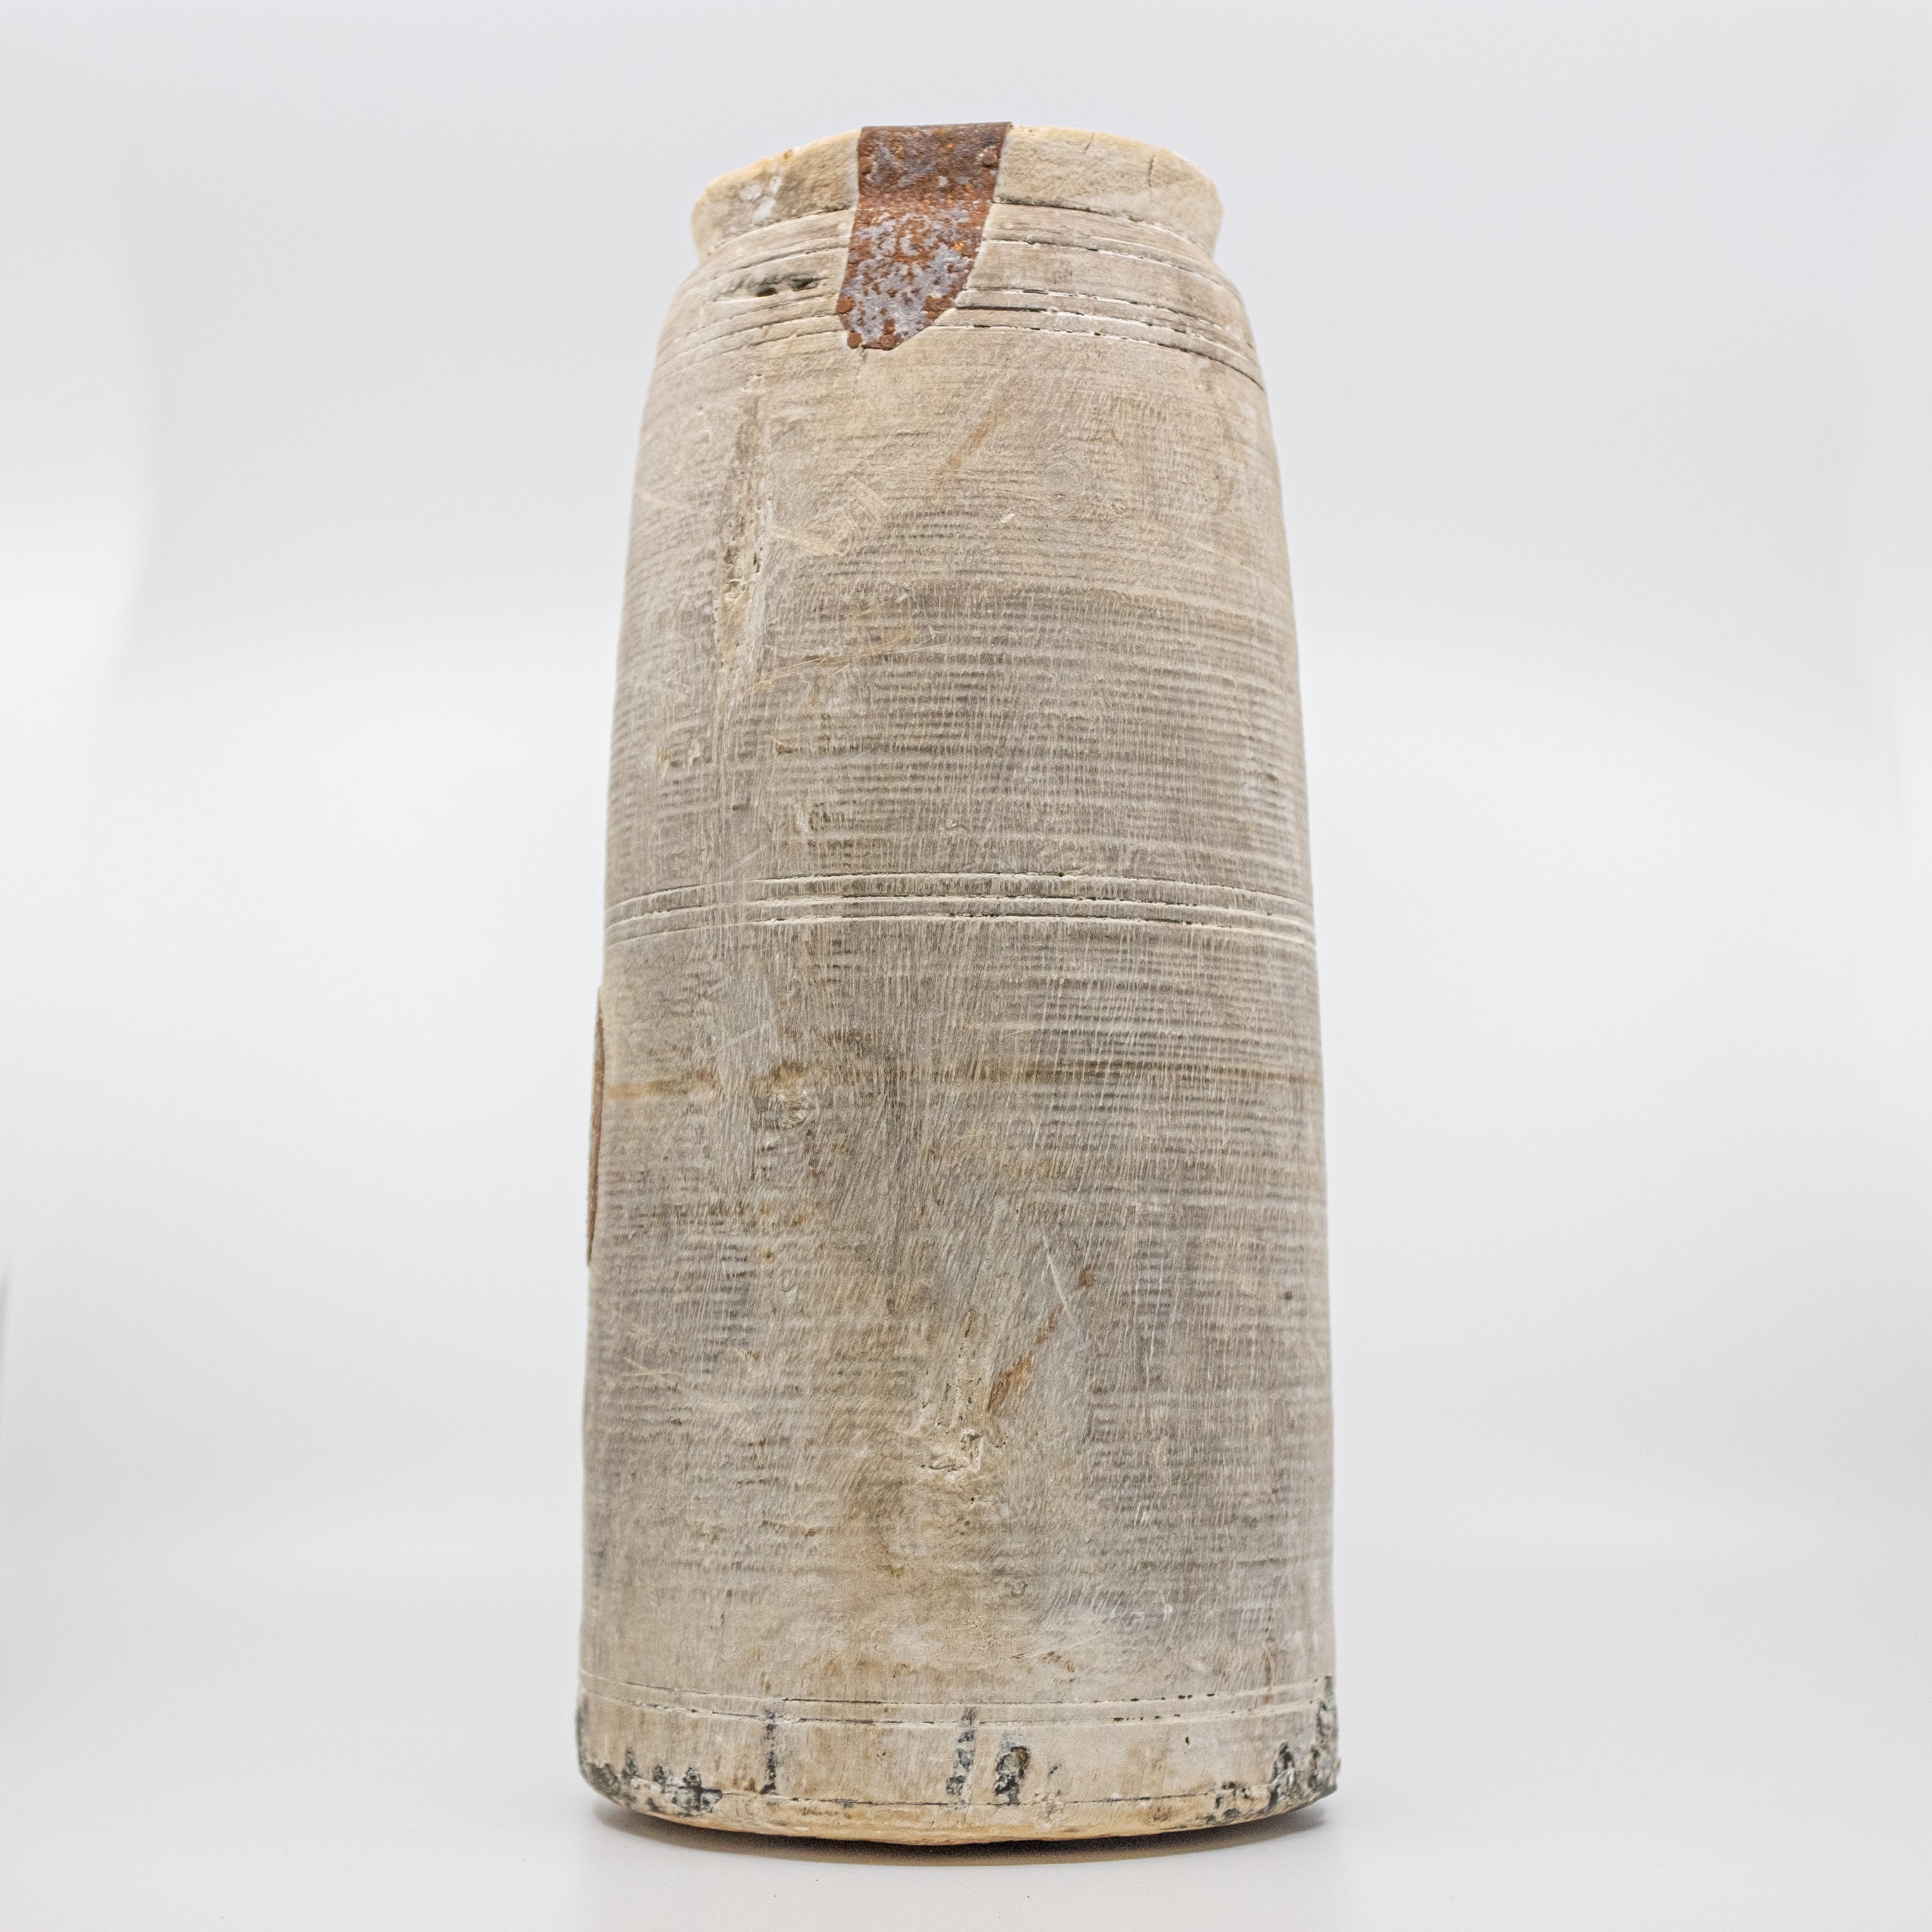 Carved Wooden Vessel